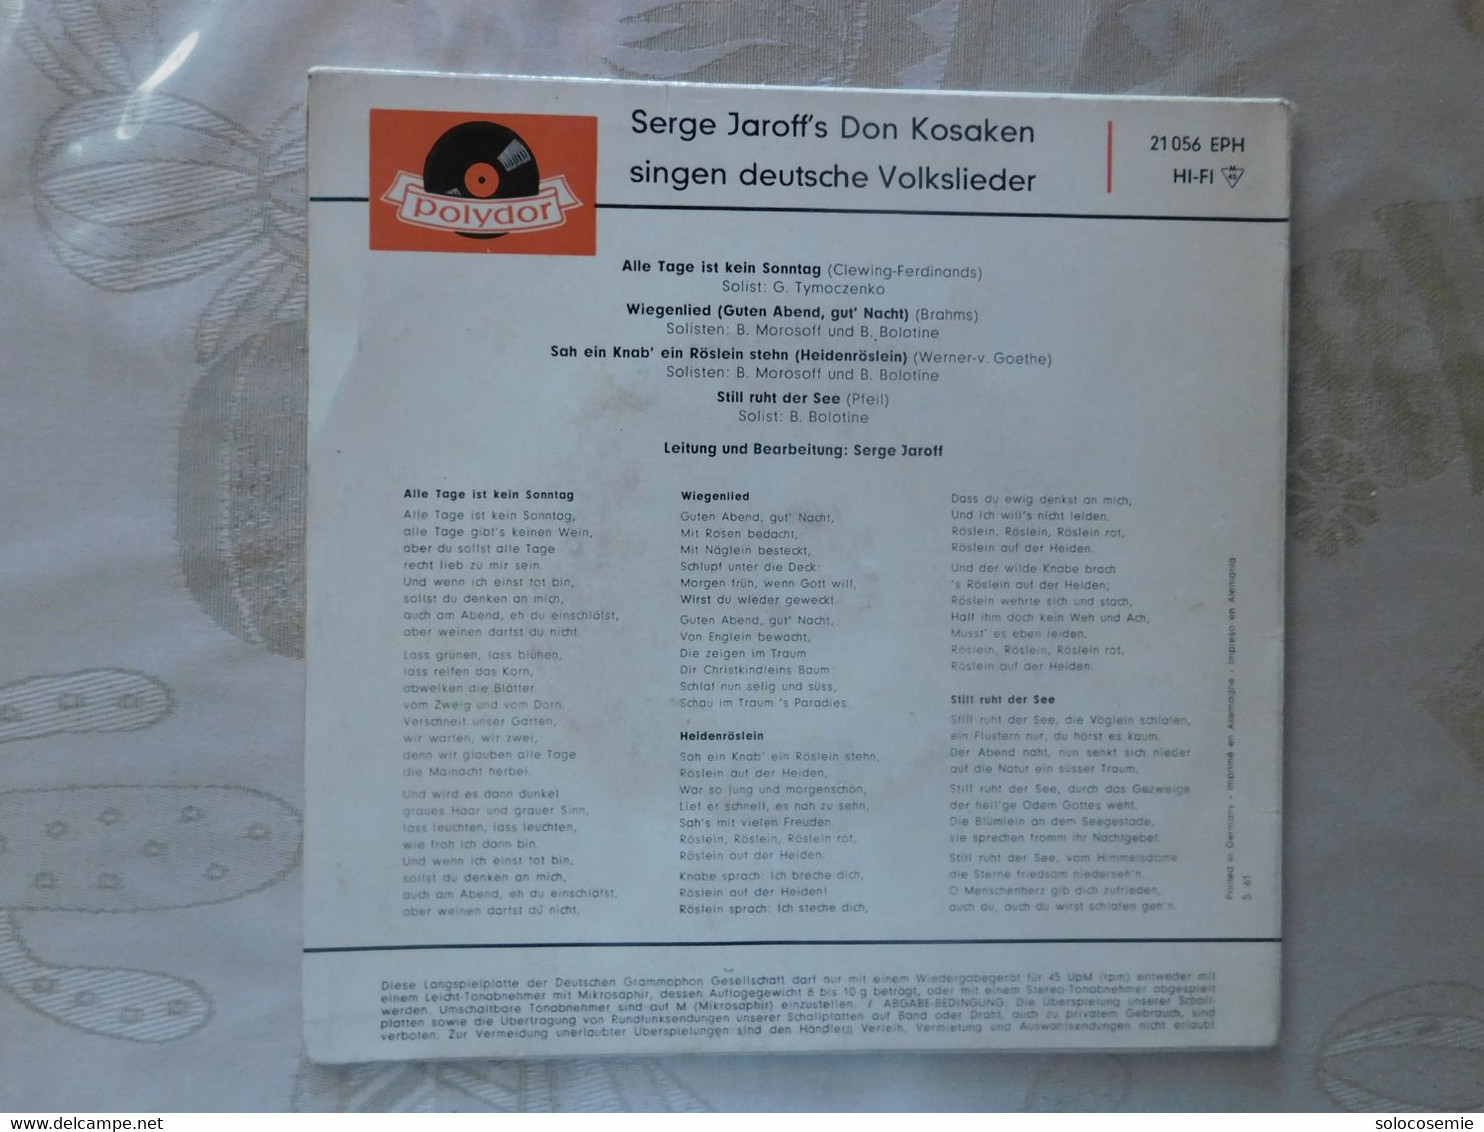 45 Giri Disco In Vinile: Serge Jaroff's Don Kosaken Singen Deutsche Volksilieder  - Polydor  21056 EPH - Autres - Musique Allemande